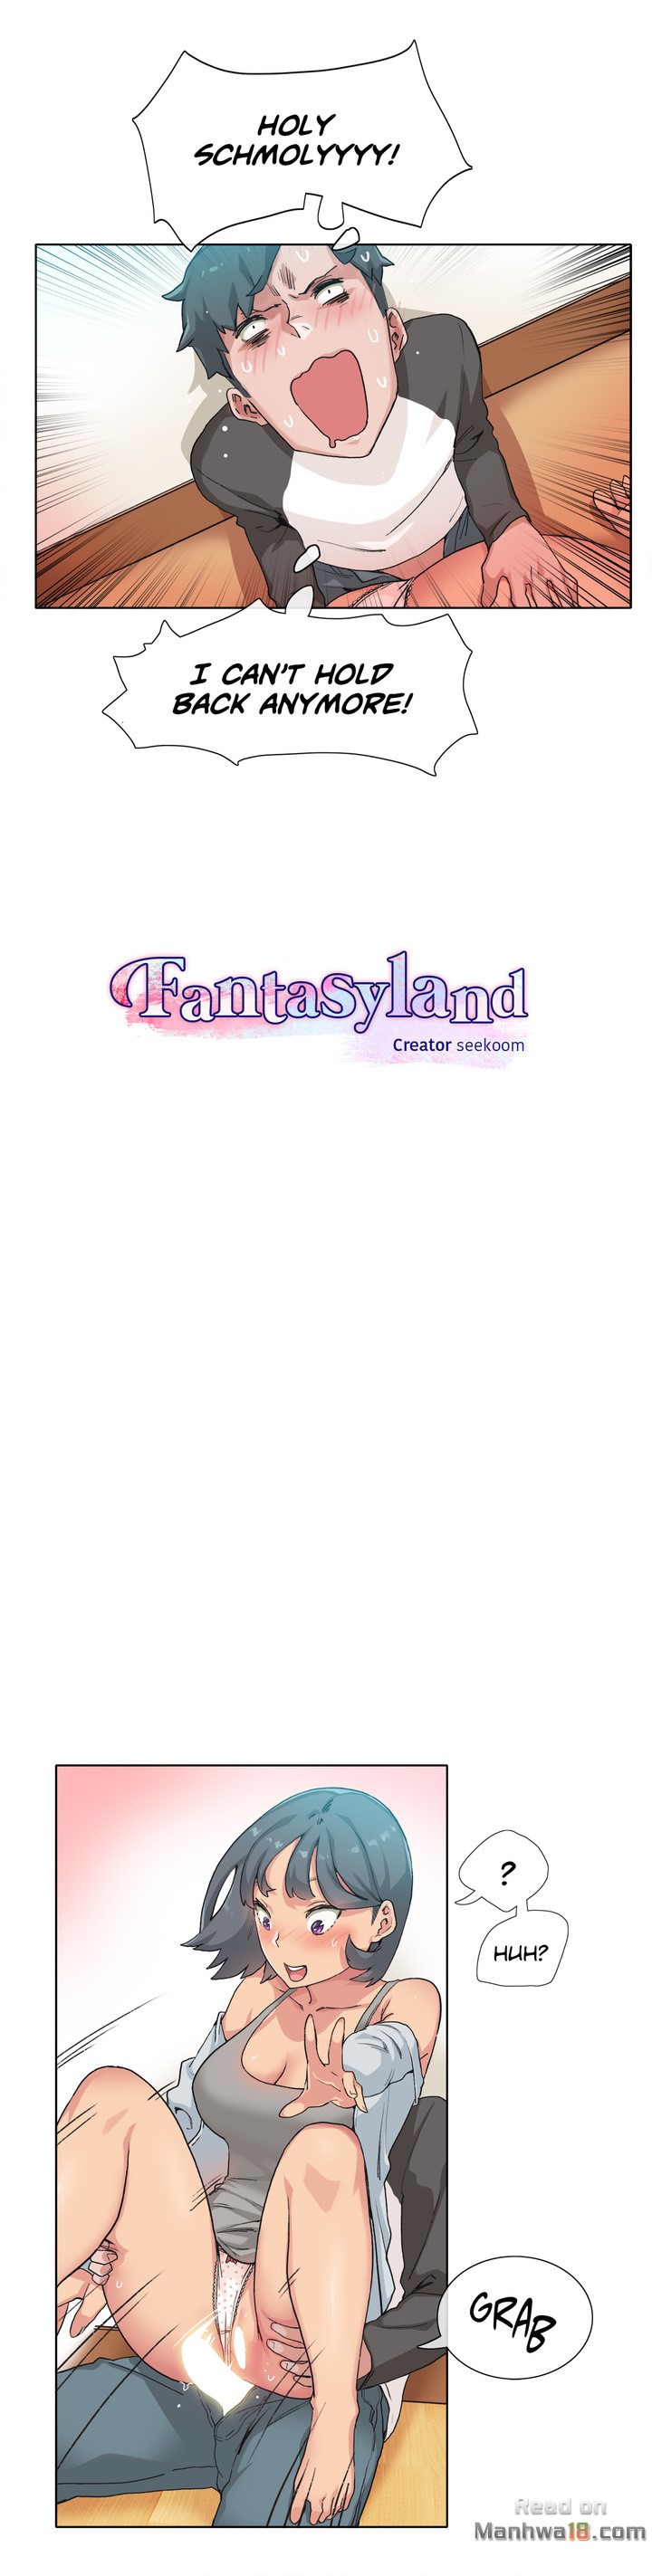 The image Fantasy Land - Chapter 12 - Jv8ozYatiMDuzsx - ManhwaManga.io